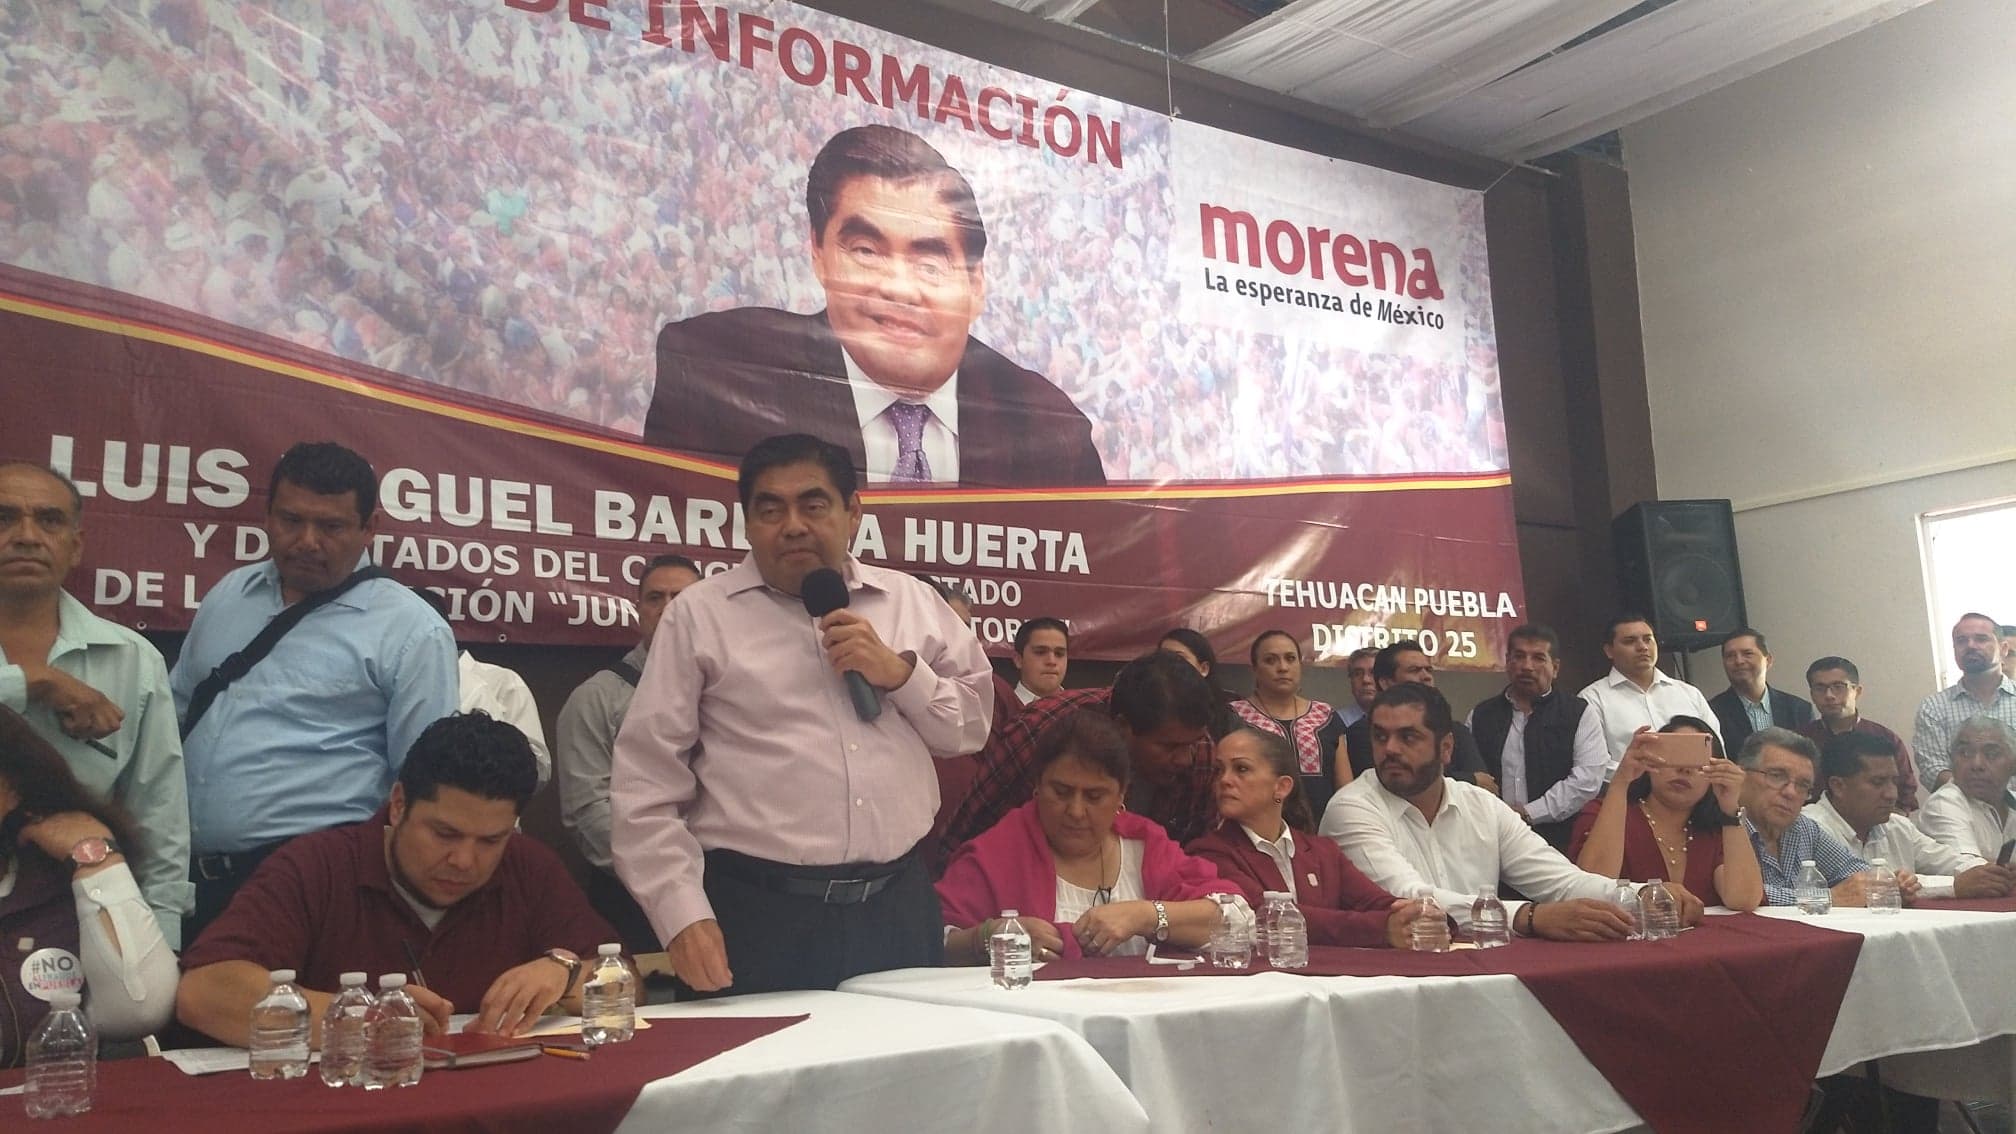 Morenovallismo quiere comprar justicia electoral: Barbosa